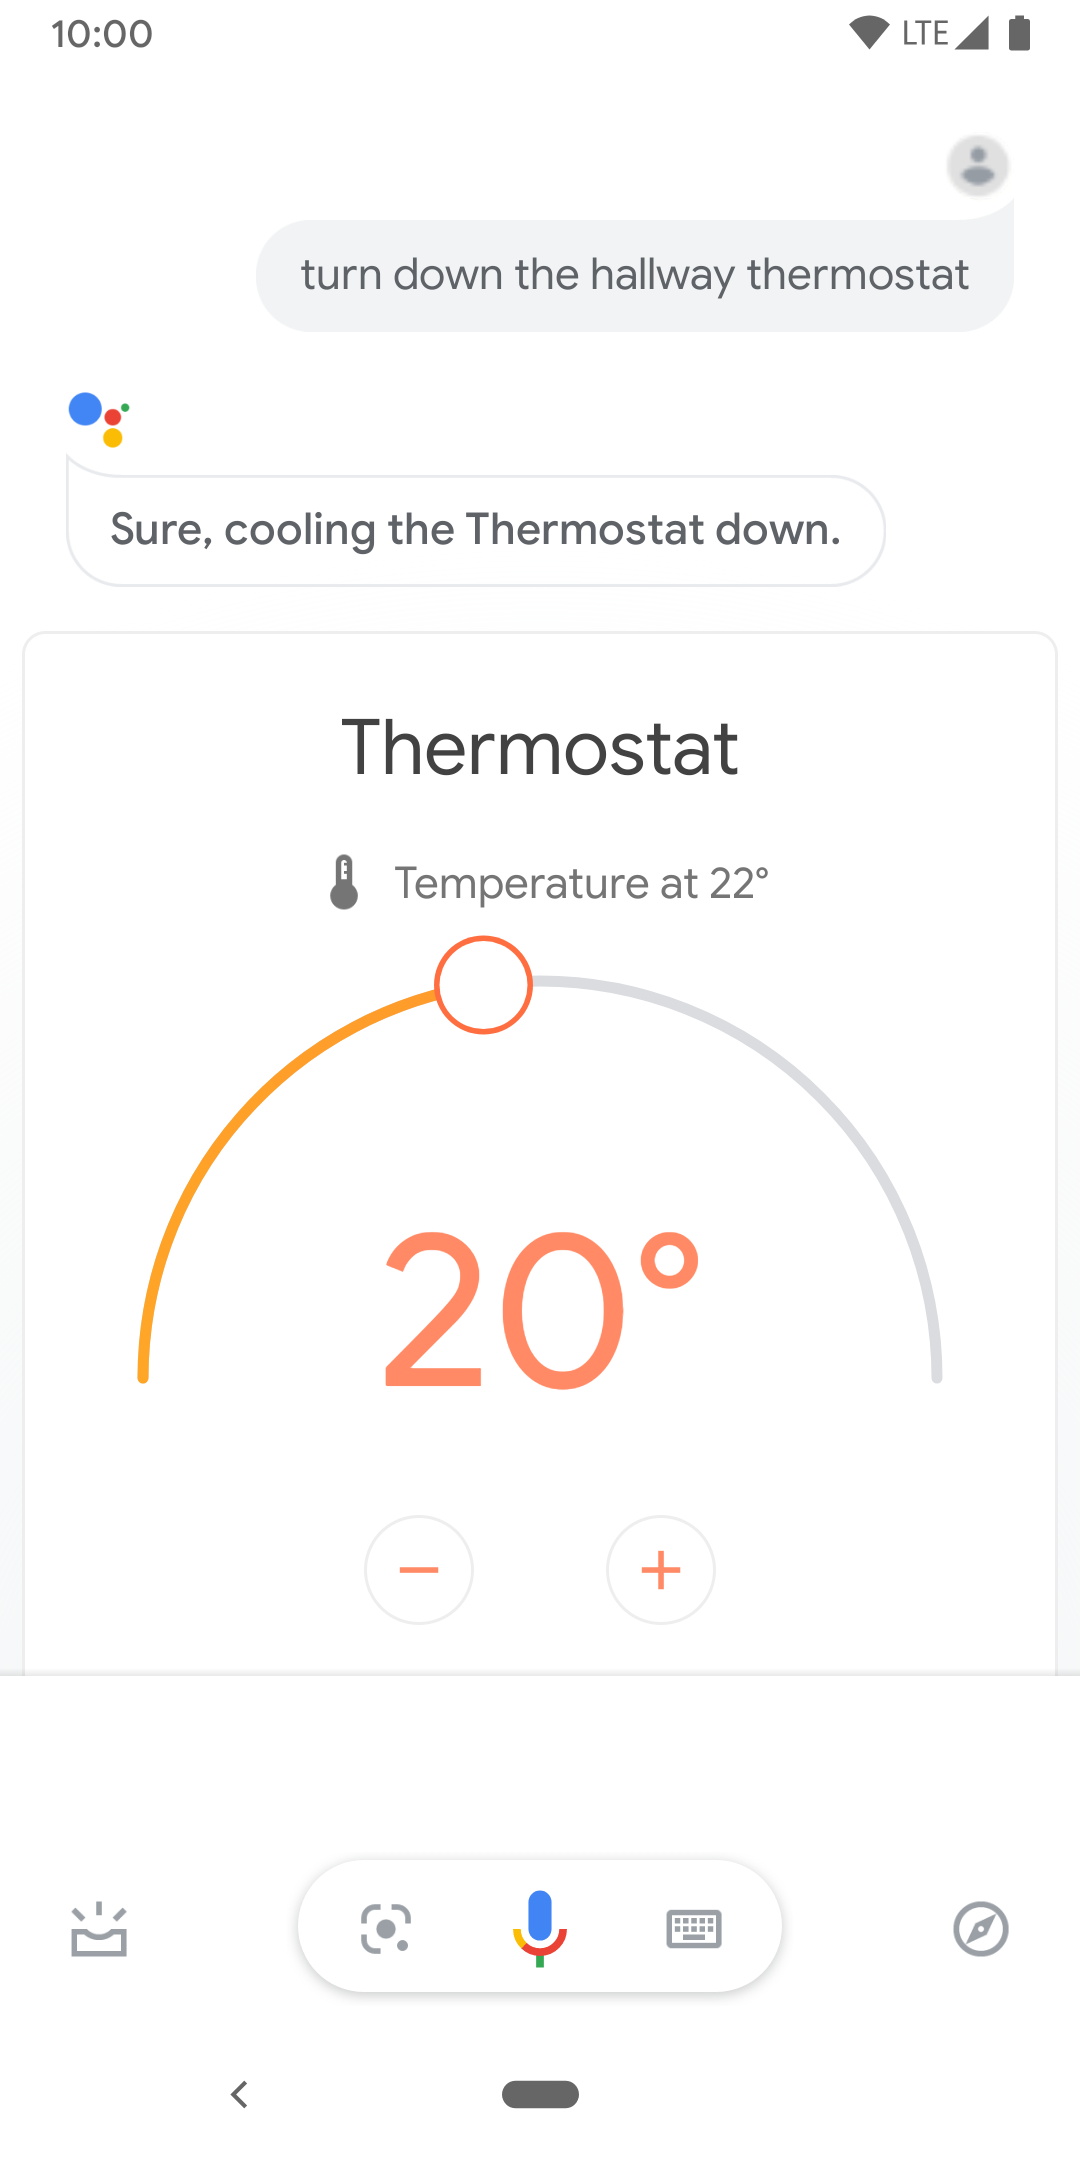 Esta imagem mostra controles por toque para controlar a temperatura do termostato do corredor.